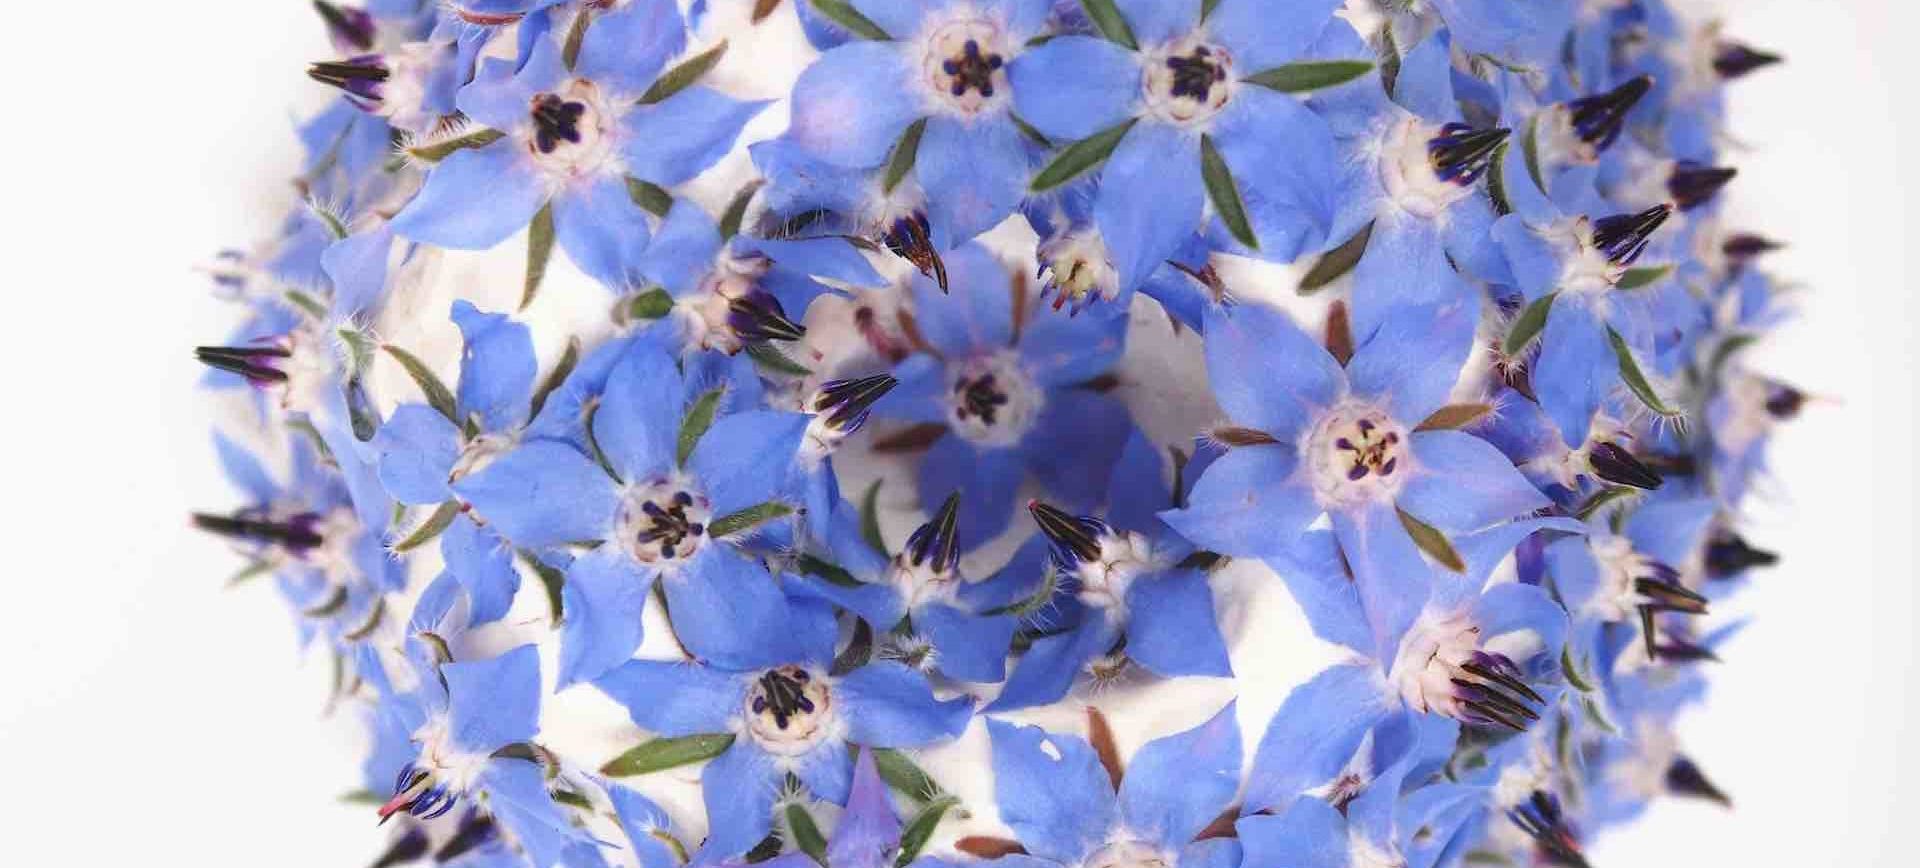 Coolglof, Chèvre-fleurs de bourrache, extrait du livre 100 Cooglofs, éditions Kéribus ©Sonia Verguet